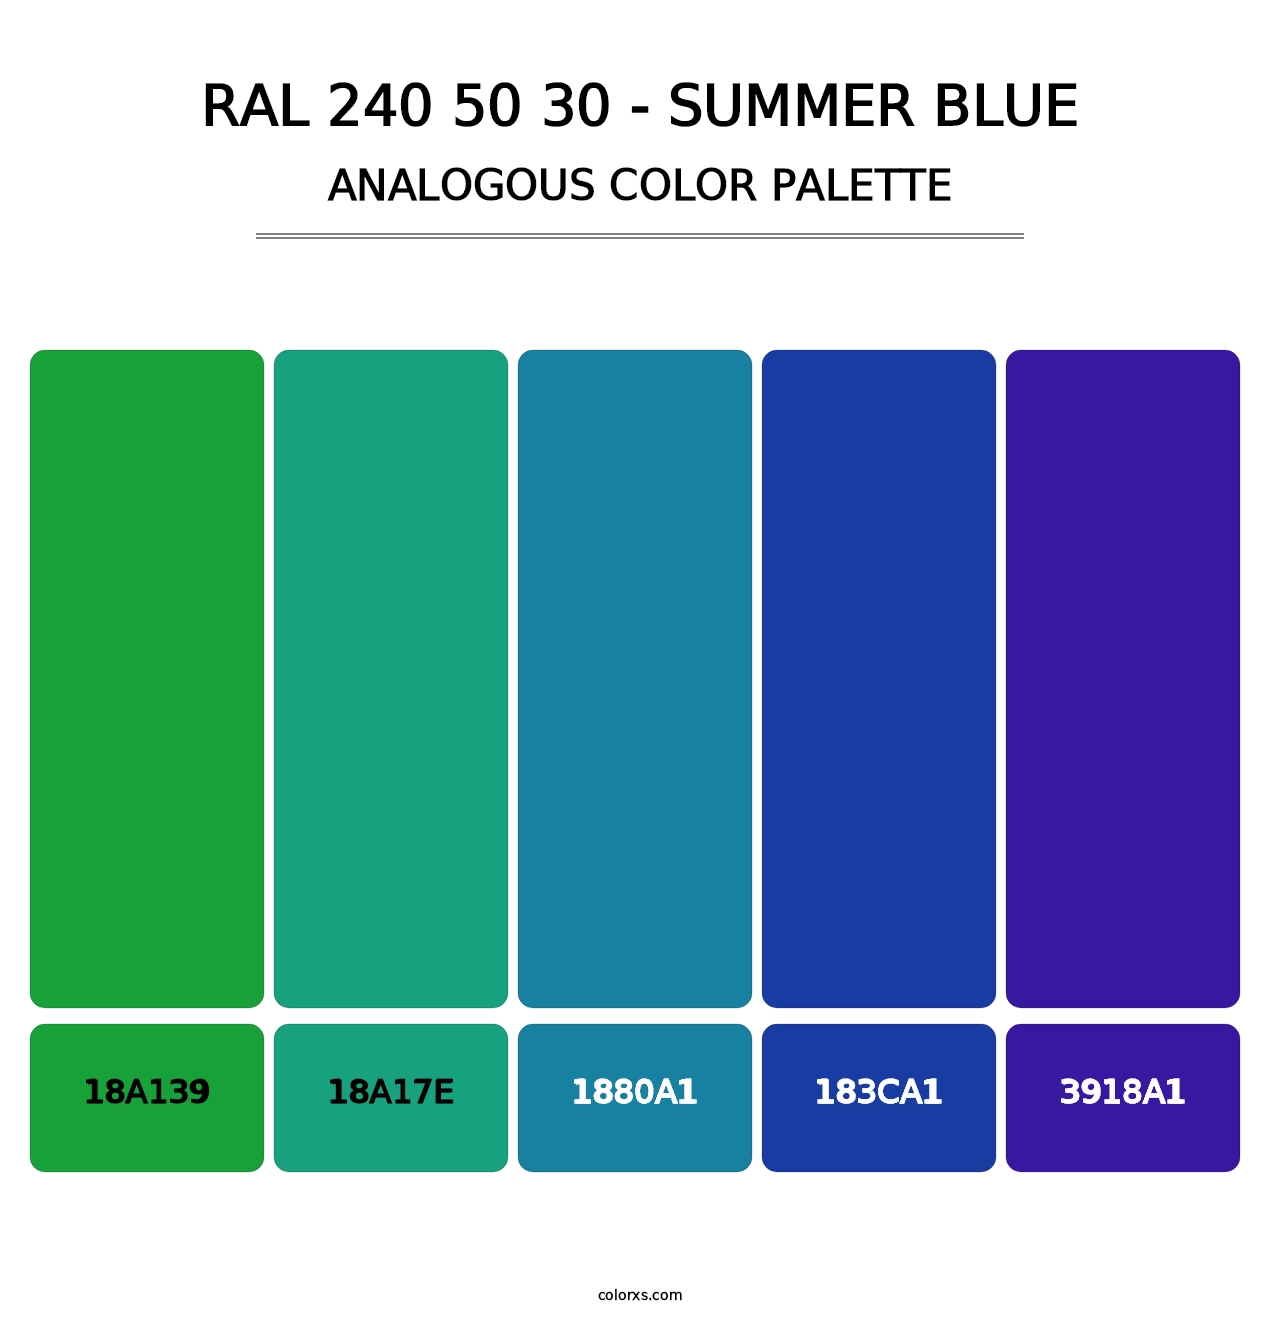 RAL 240 50 30 - Summer Blue - Analogous Color Palette